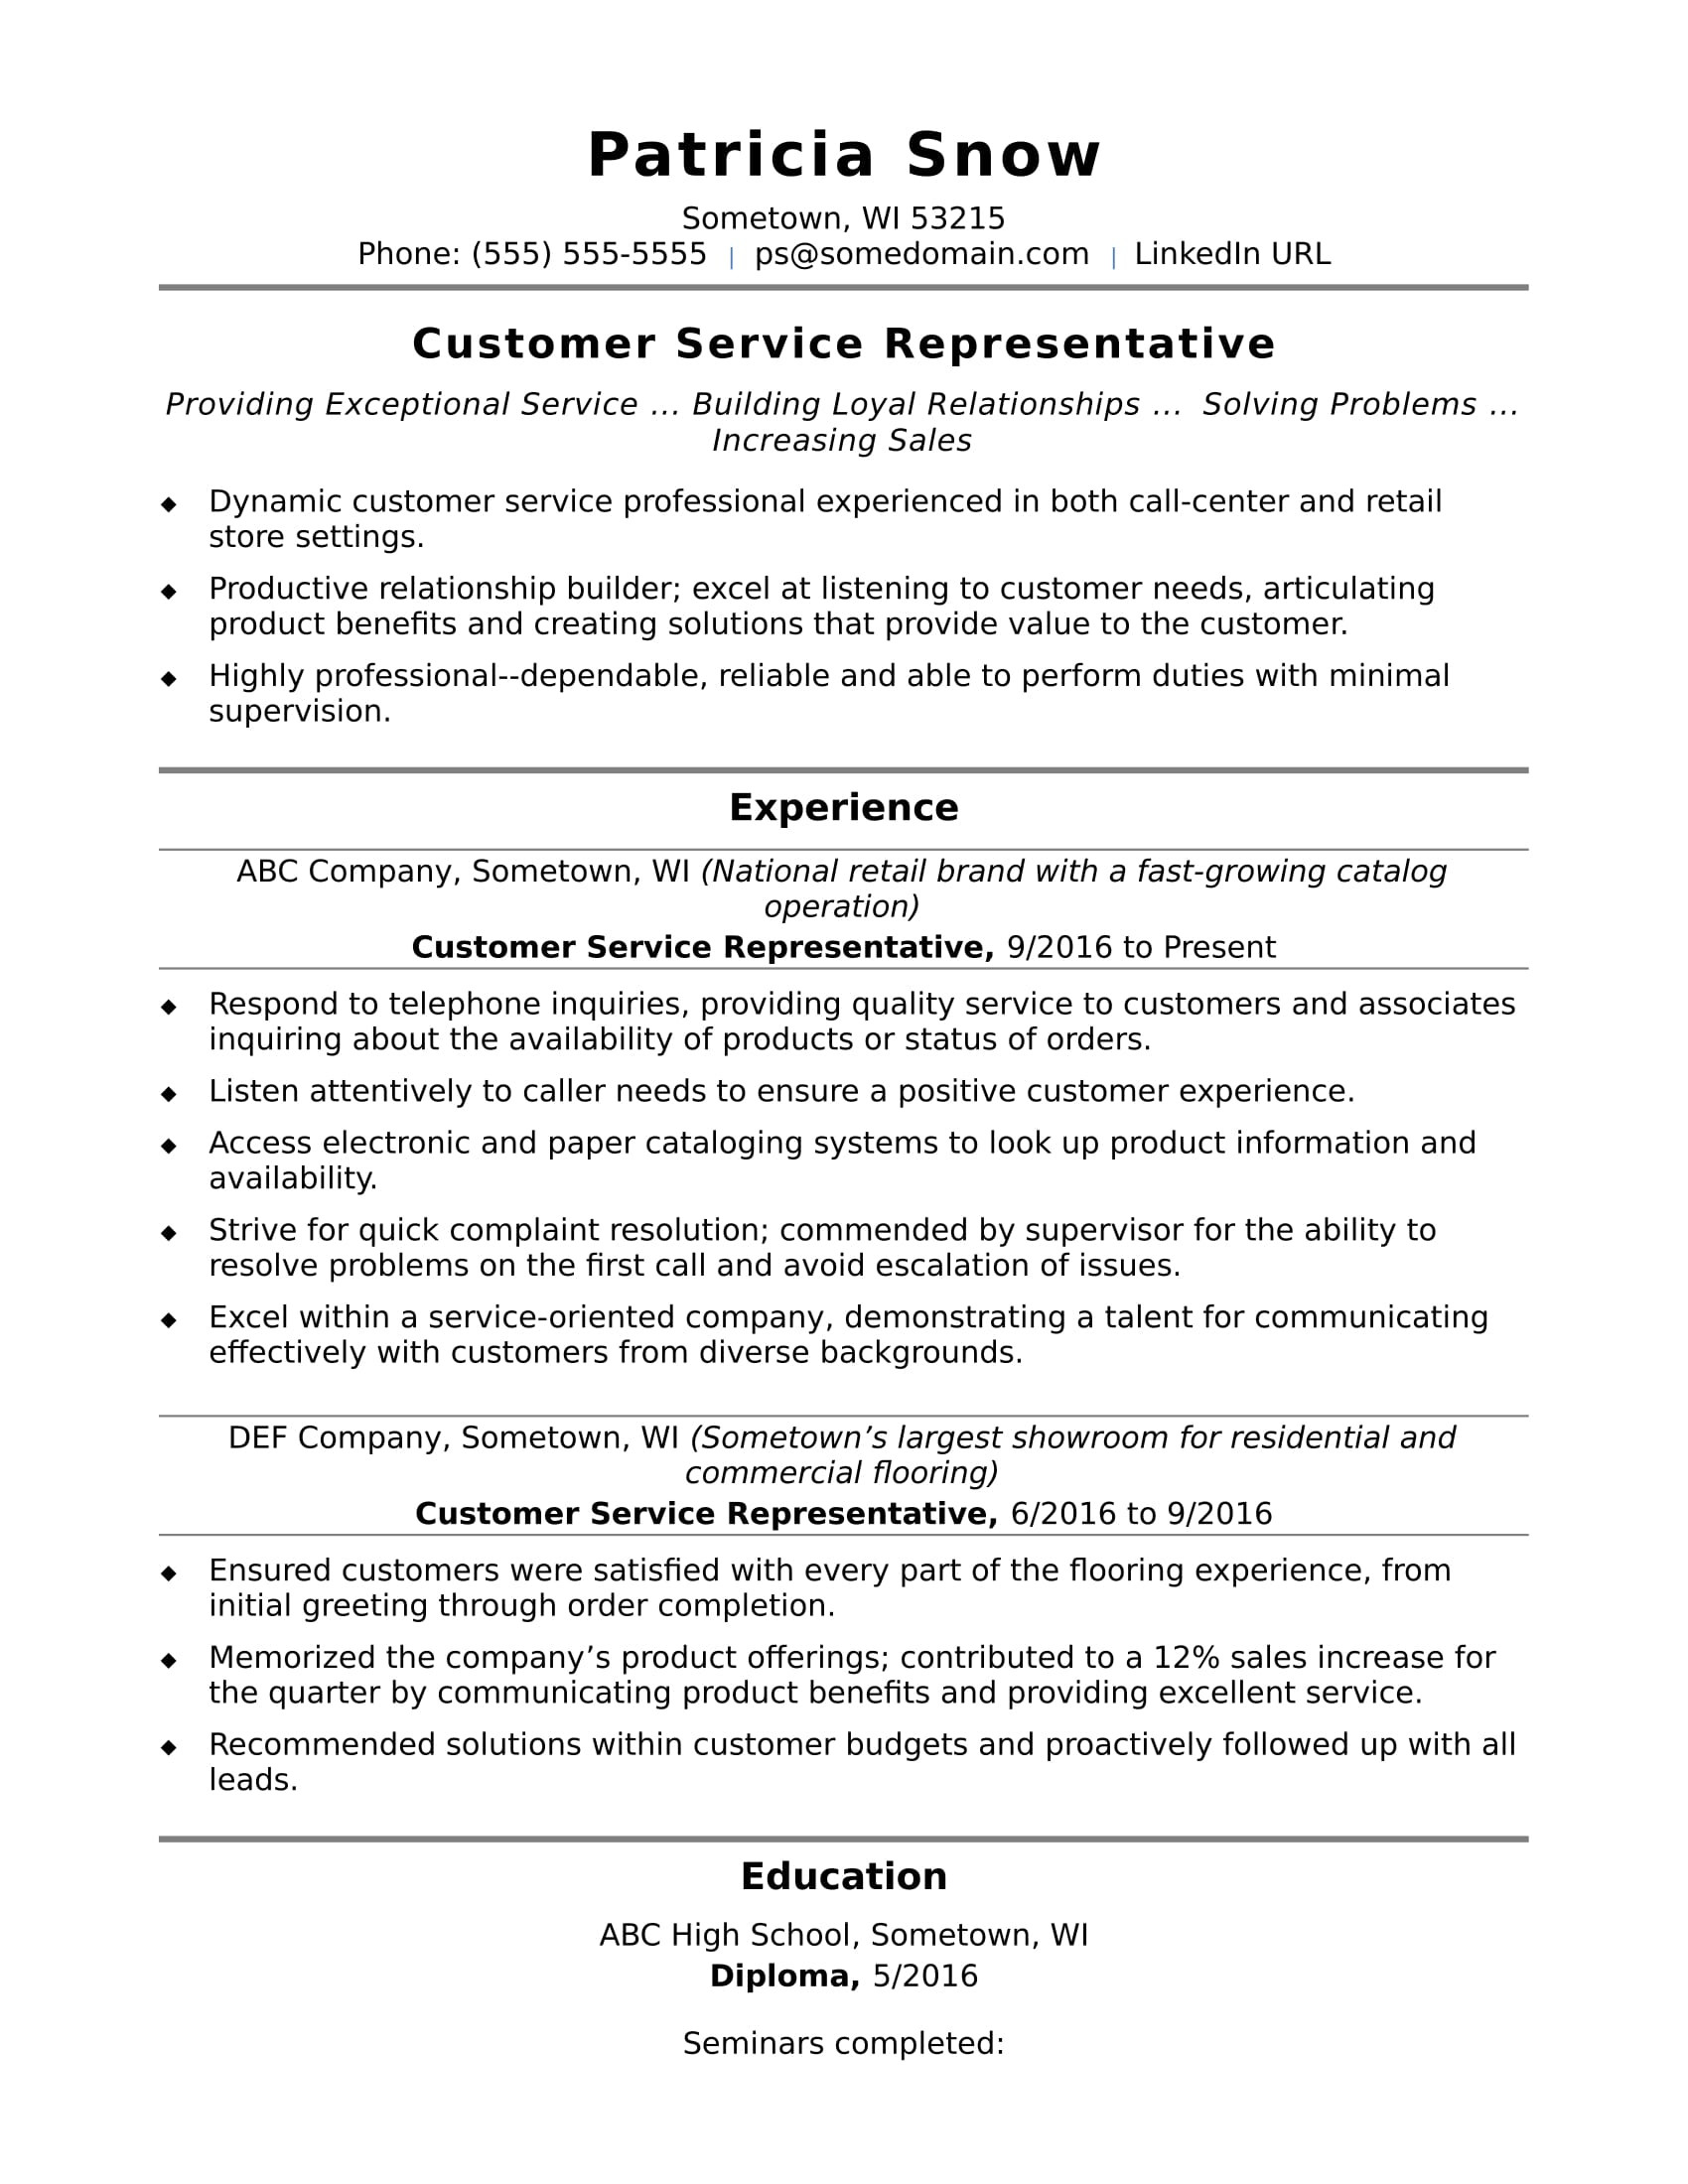 Sample Resume Entry Level Including Internships Entry-level Customer Service Resume Sample Monster.com